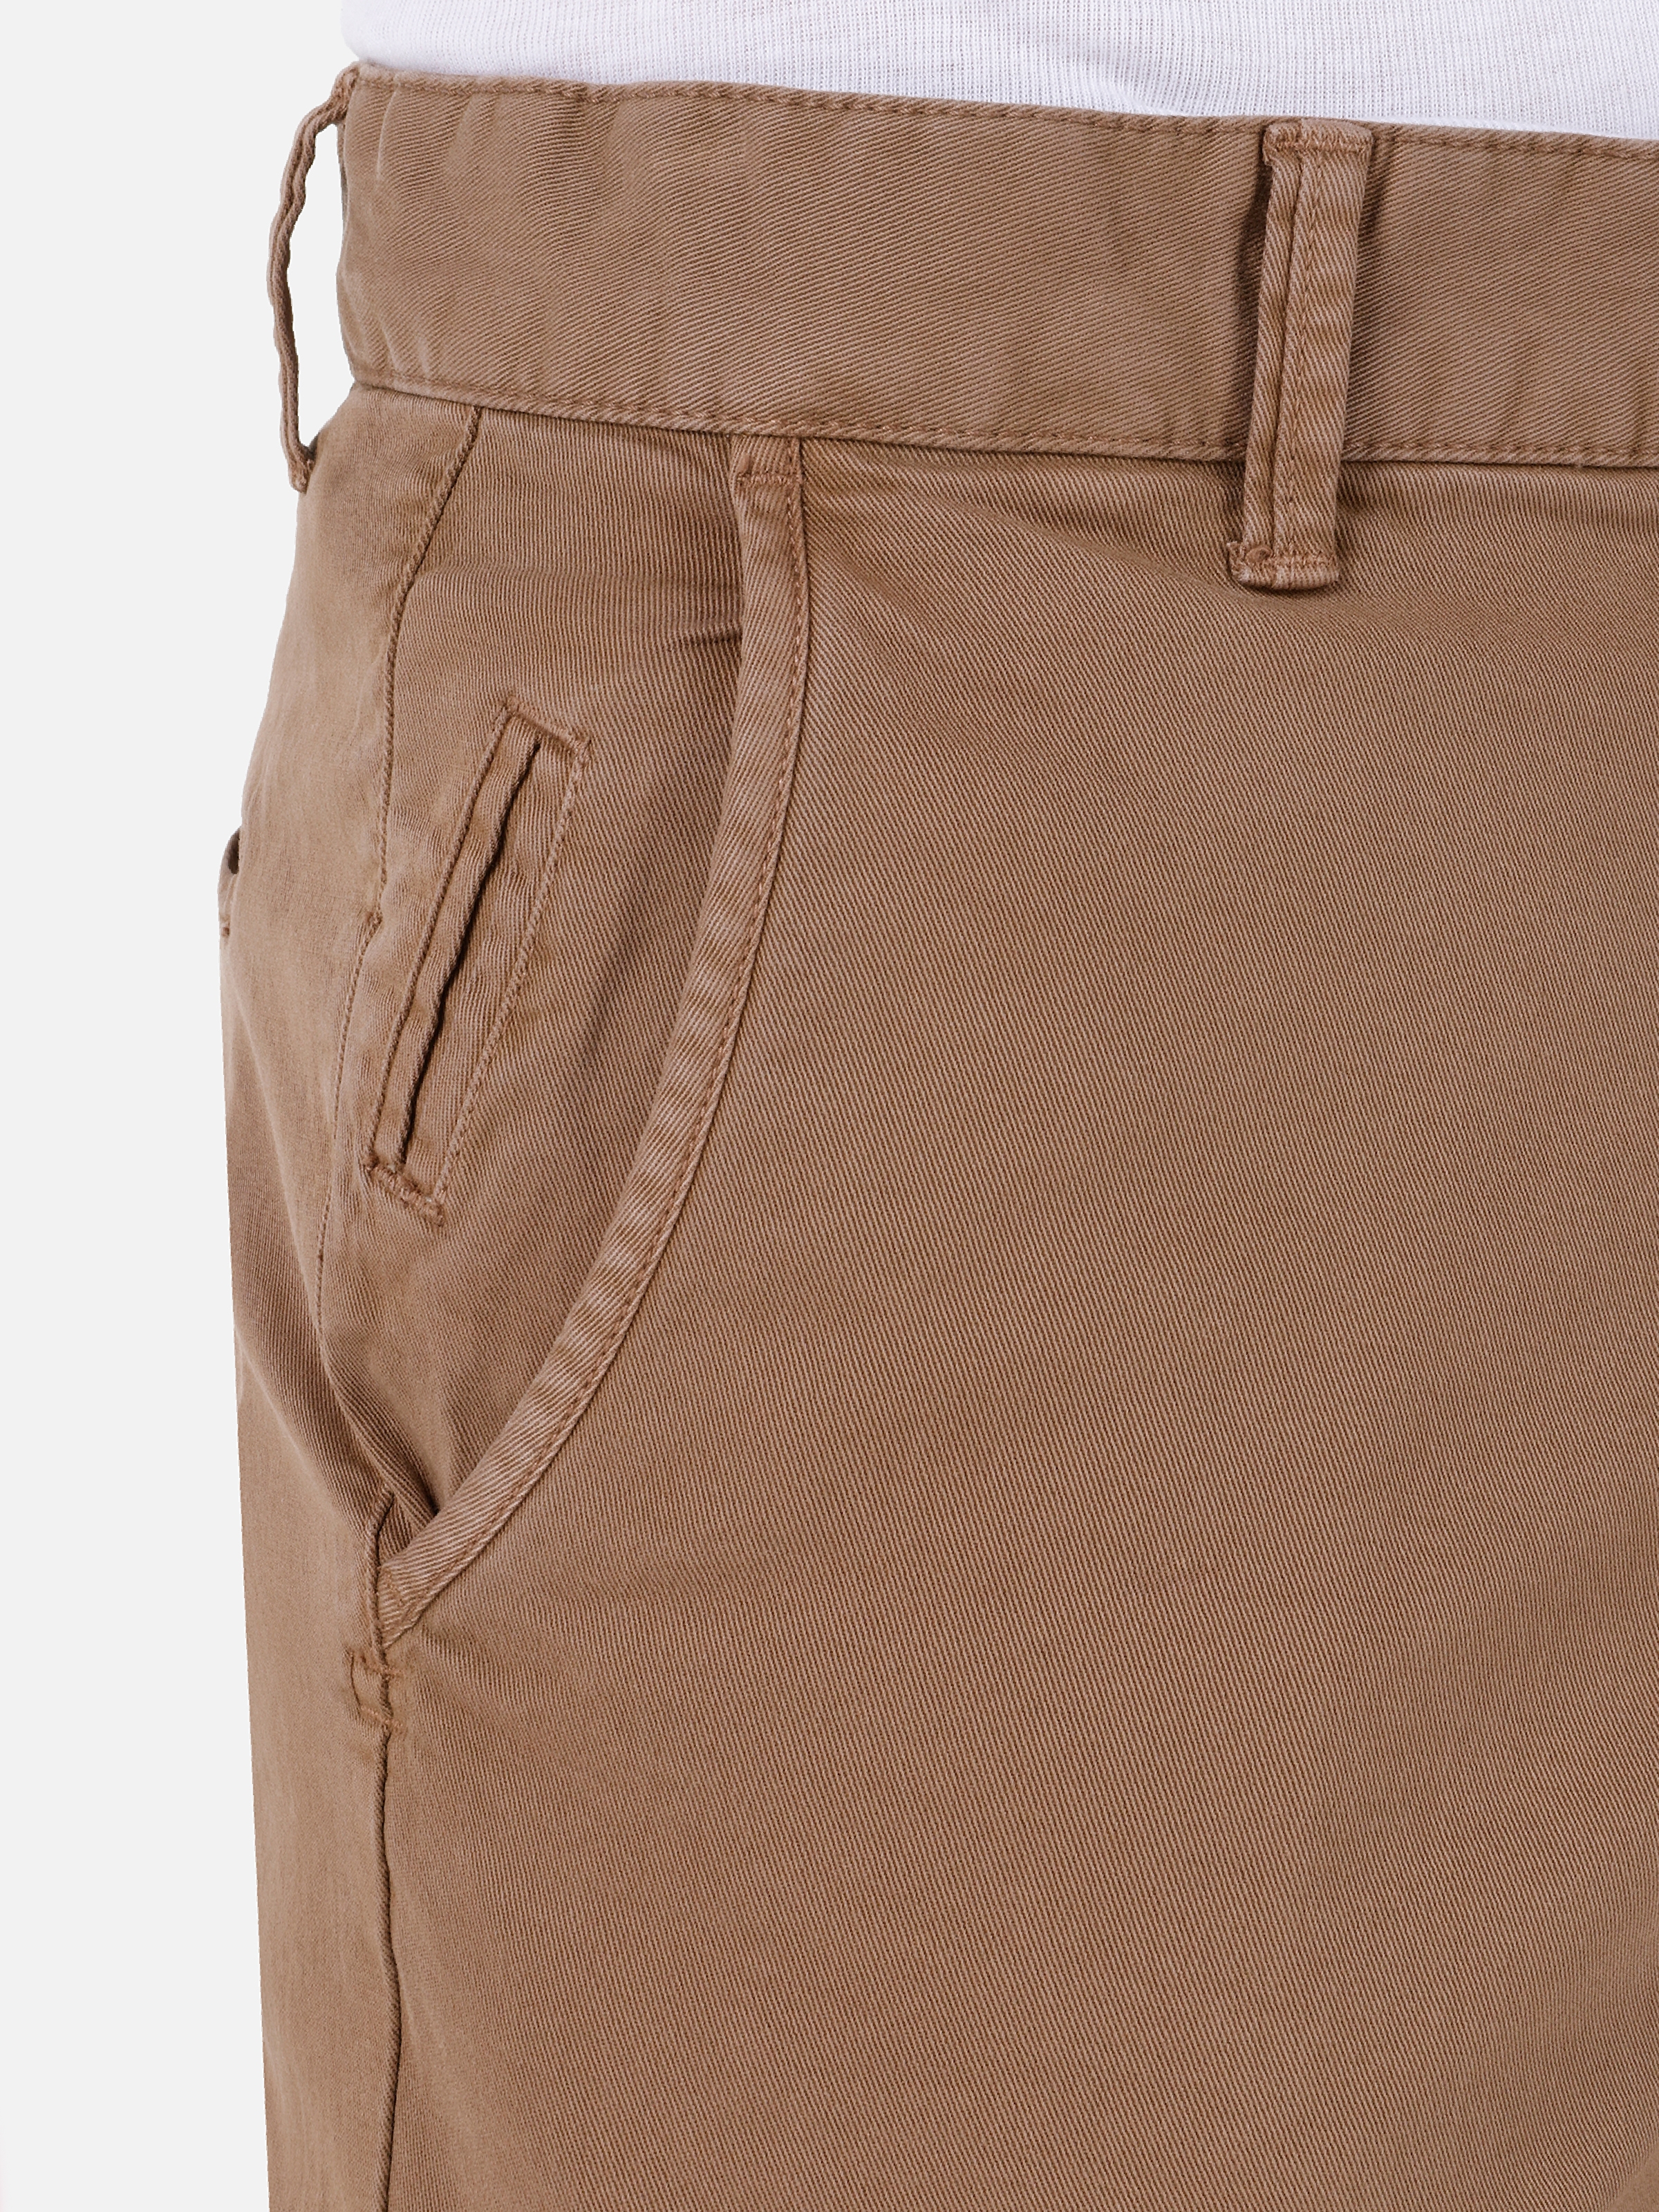 Afficher les détails de Pantalon Marron Pour Hommes, Coupe Slim, Taille Moyenne, Jambe Droite